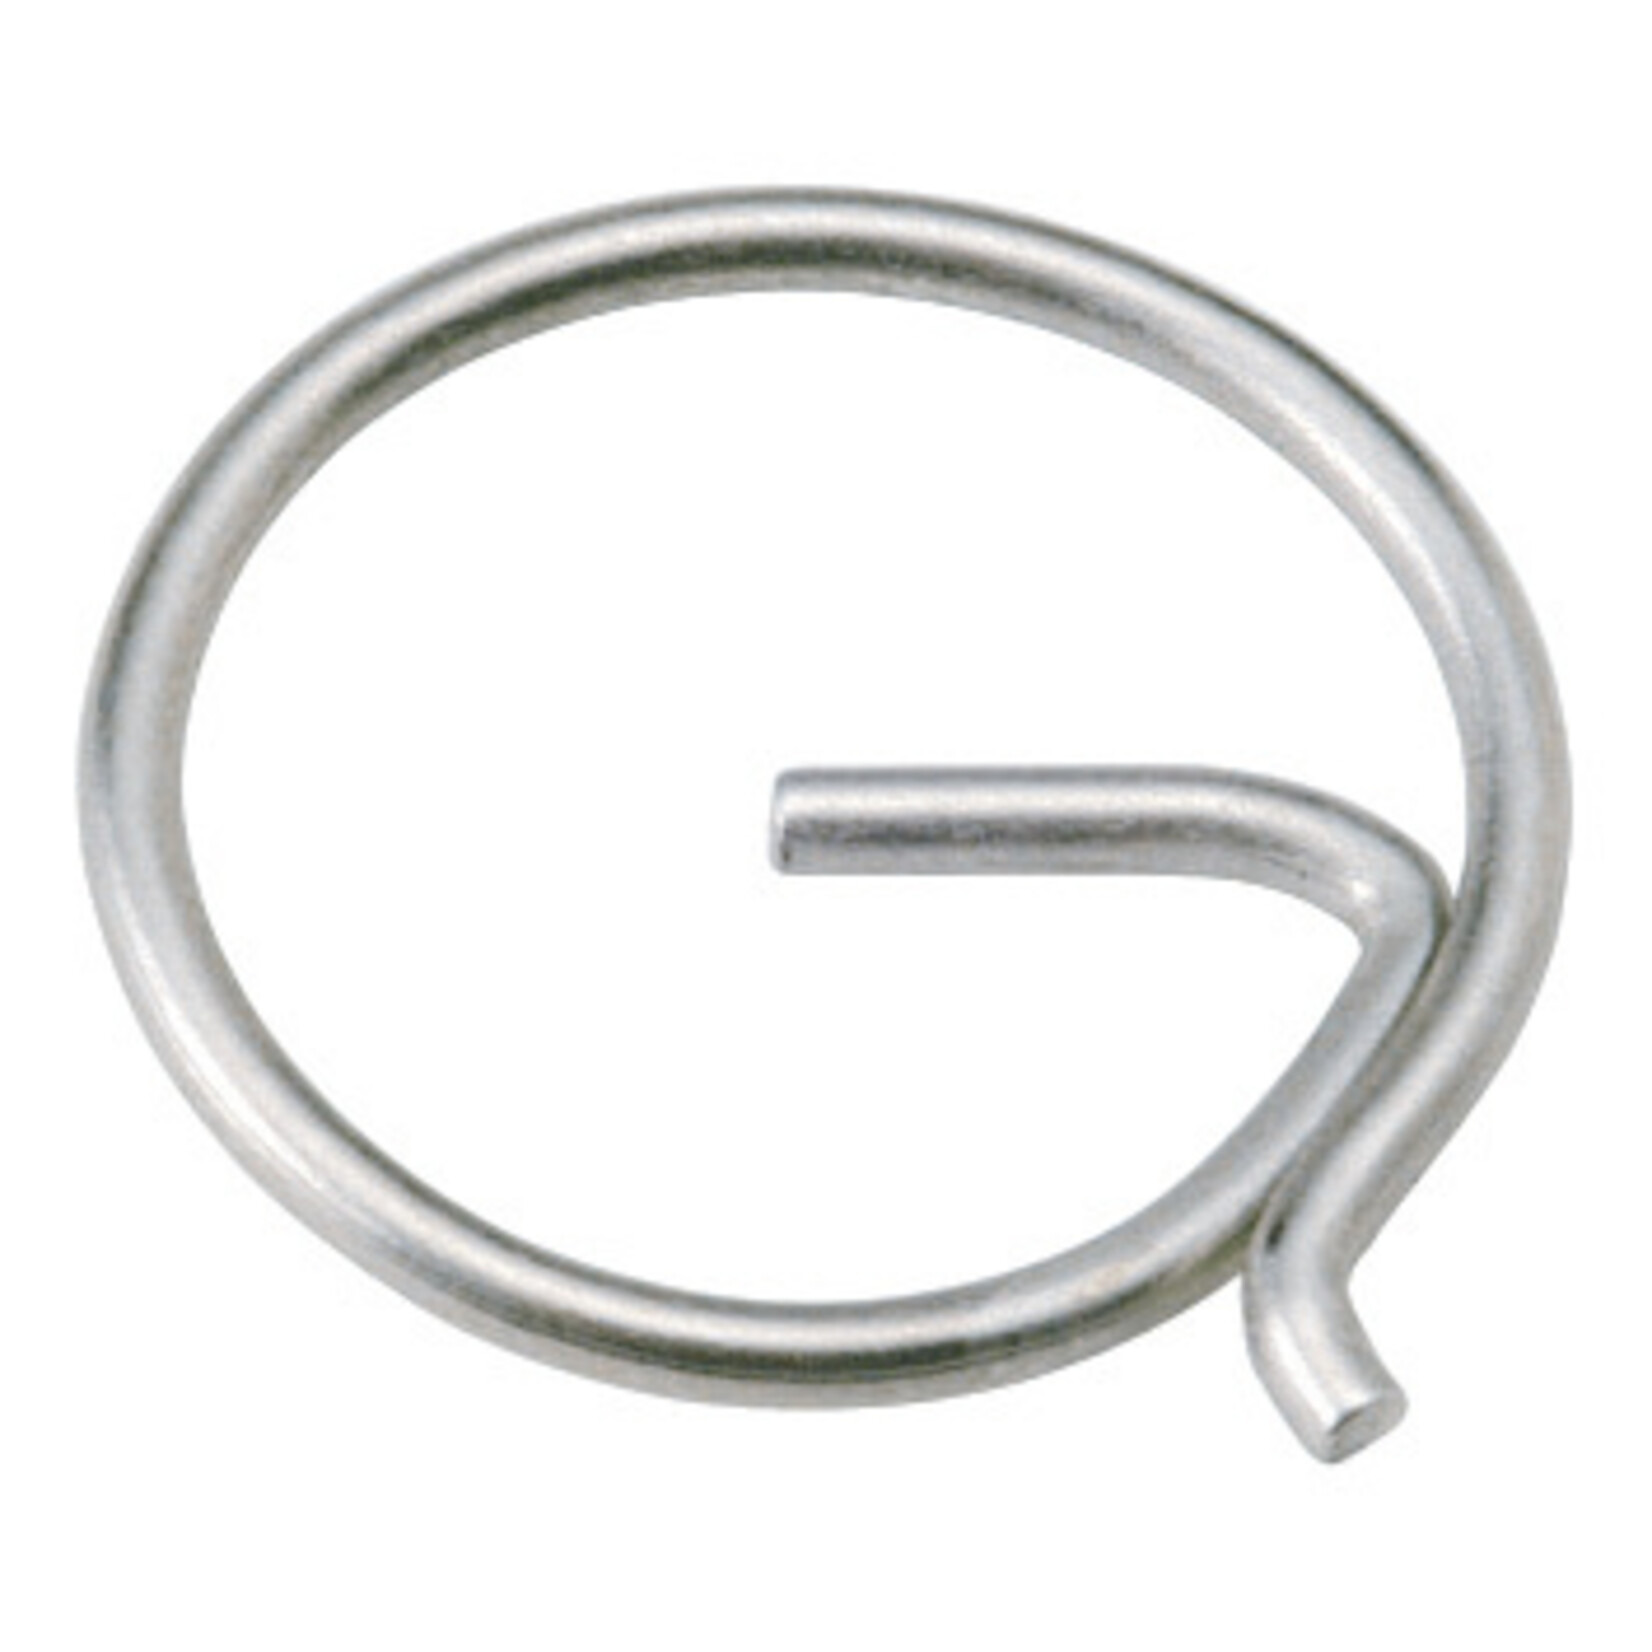 Plastimo Split ring s/s 11mm f/rigg screw